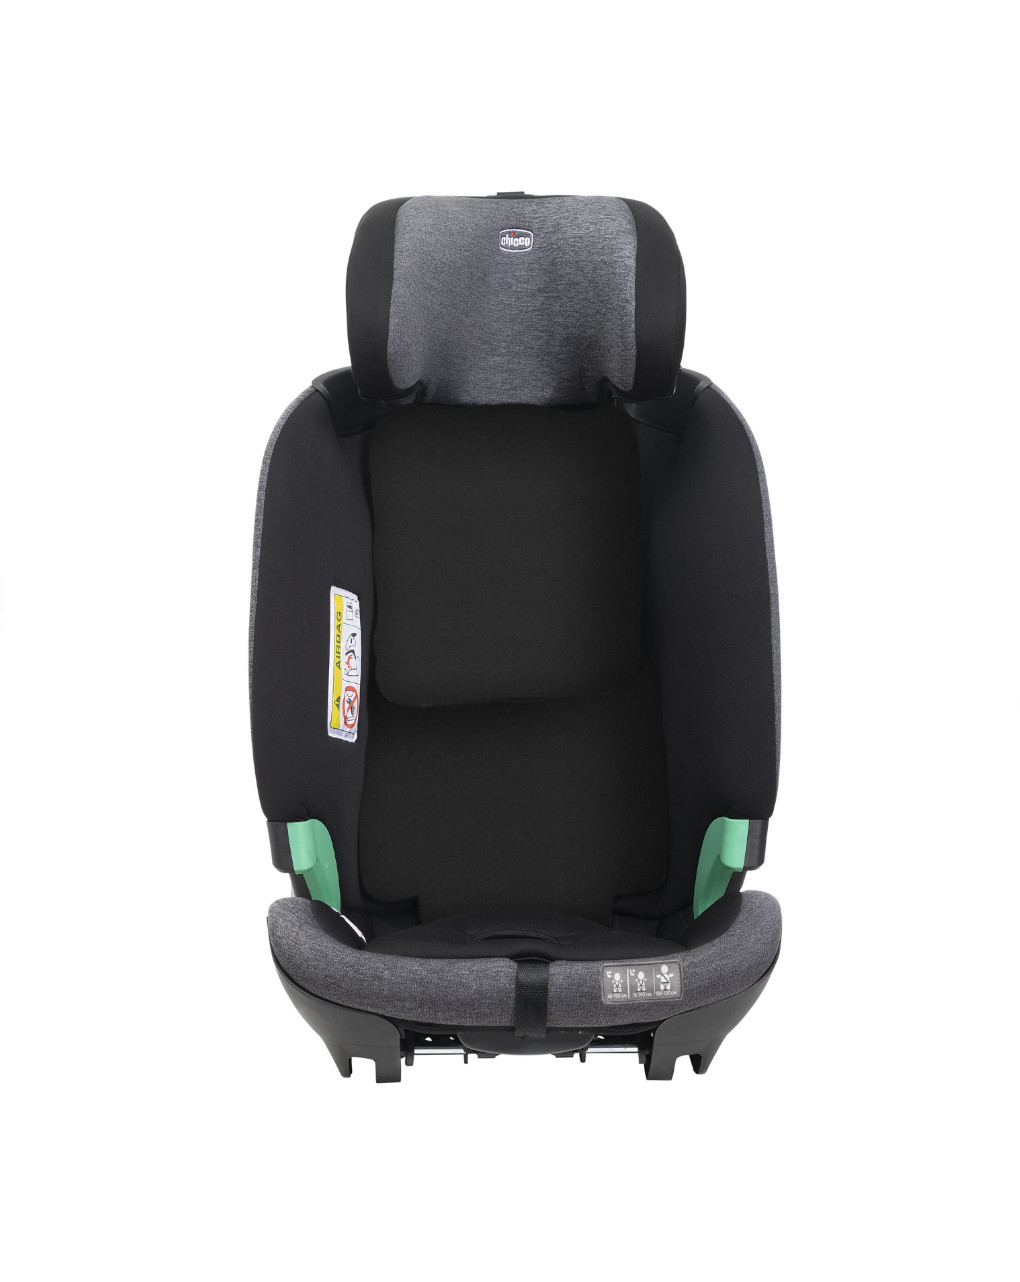 Seggiolino auto bi-seat i-size black (61-150 cm) - chicco - Chicco